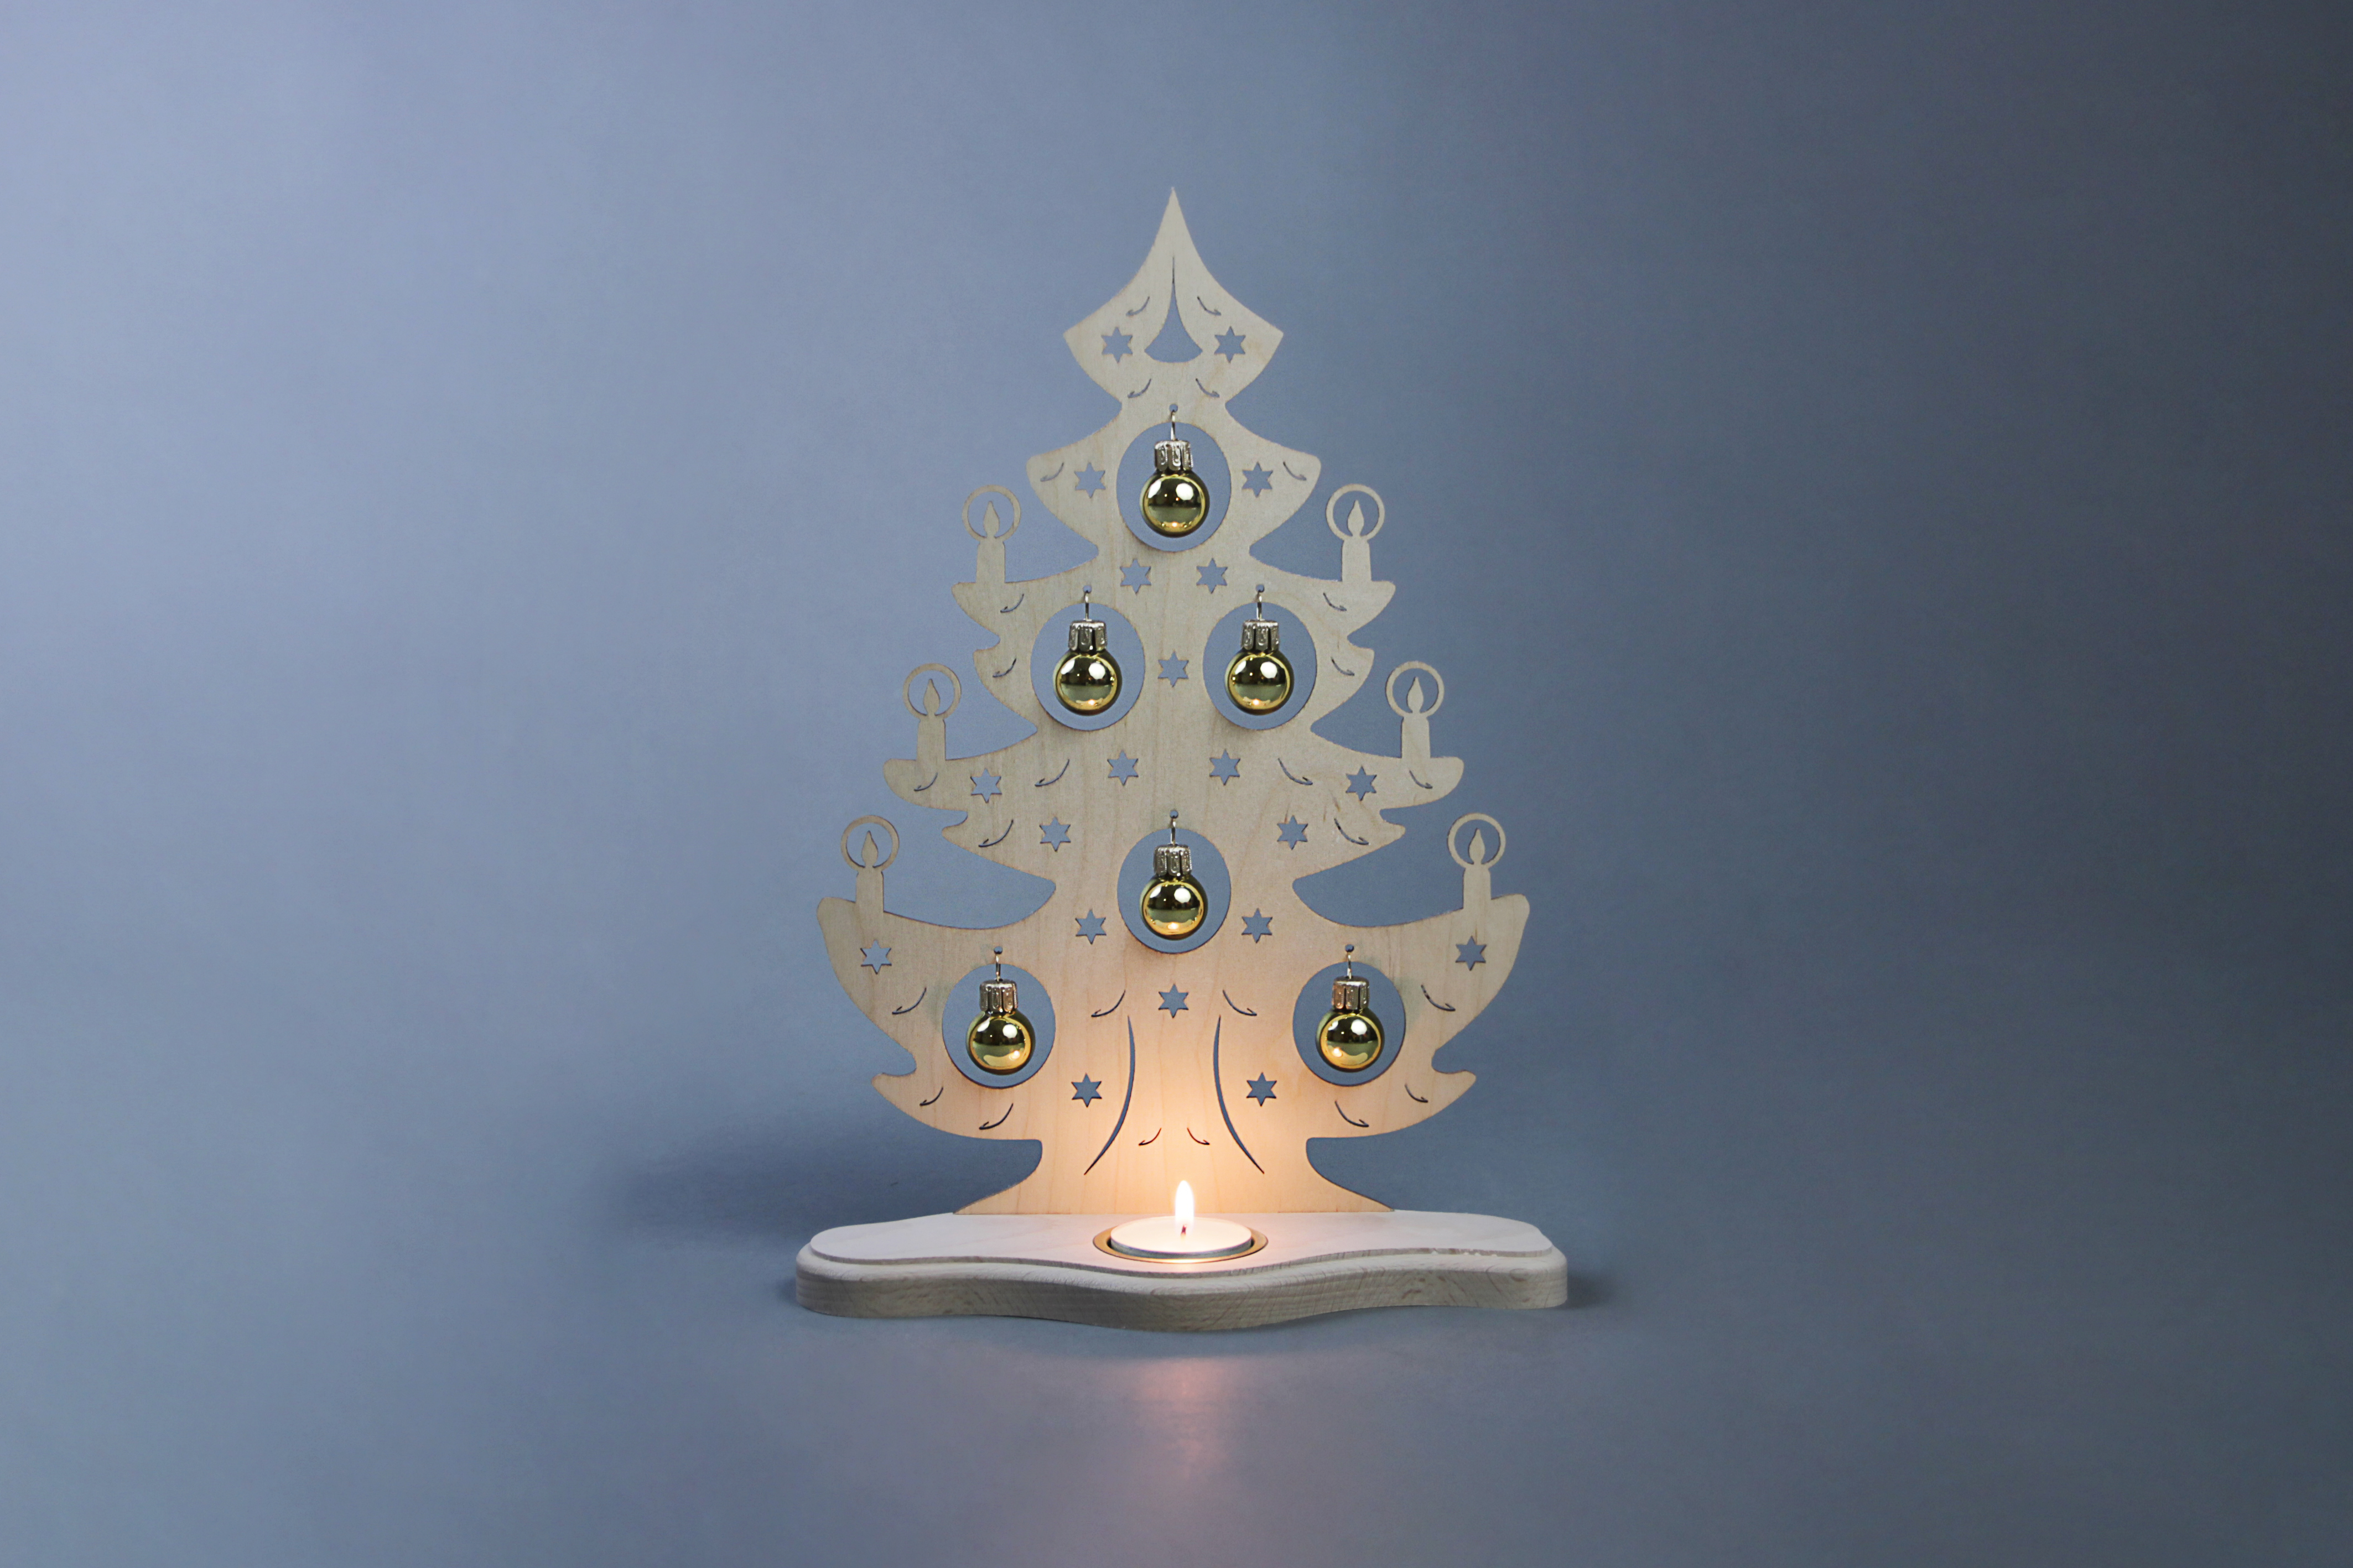 Teelichthalter Weihnachtsbaum mit goldenen Kugeln | Teelichthalter |  Weihnachten | WEIGLA